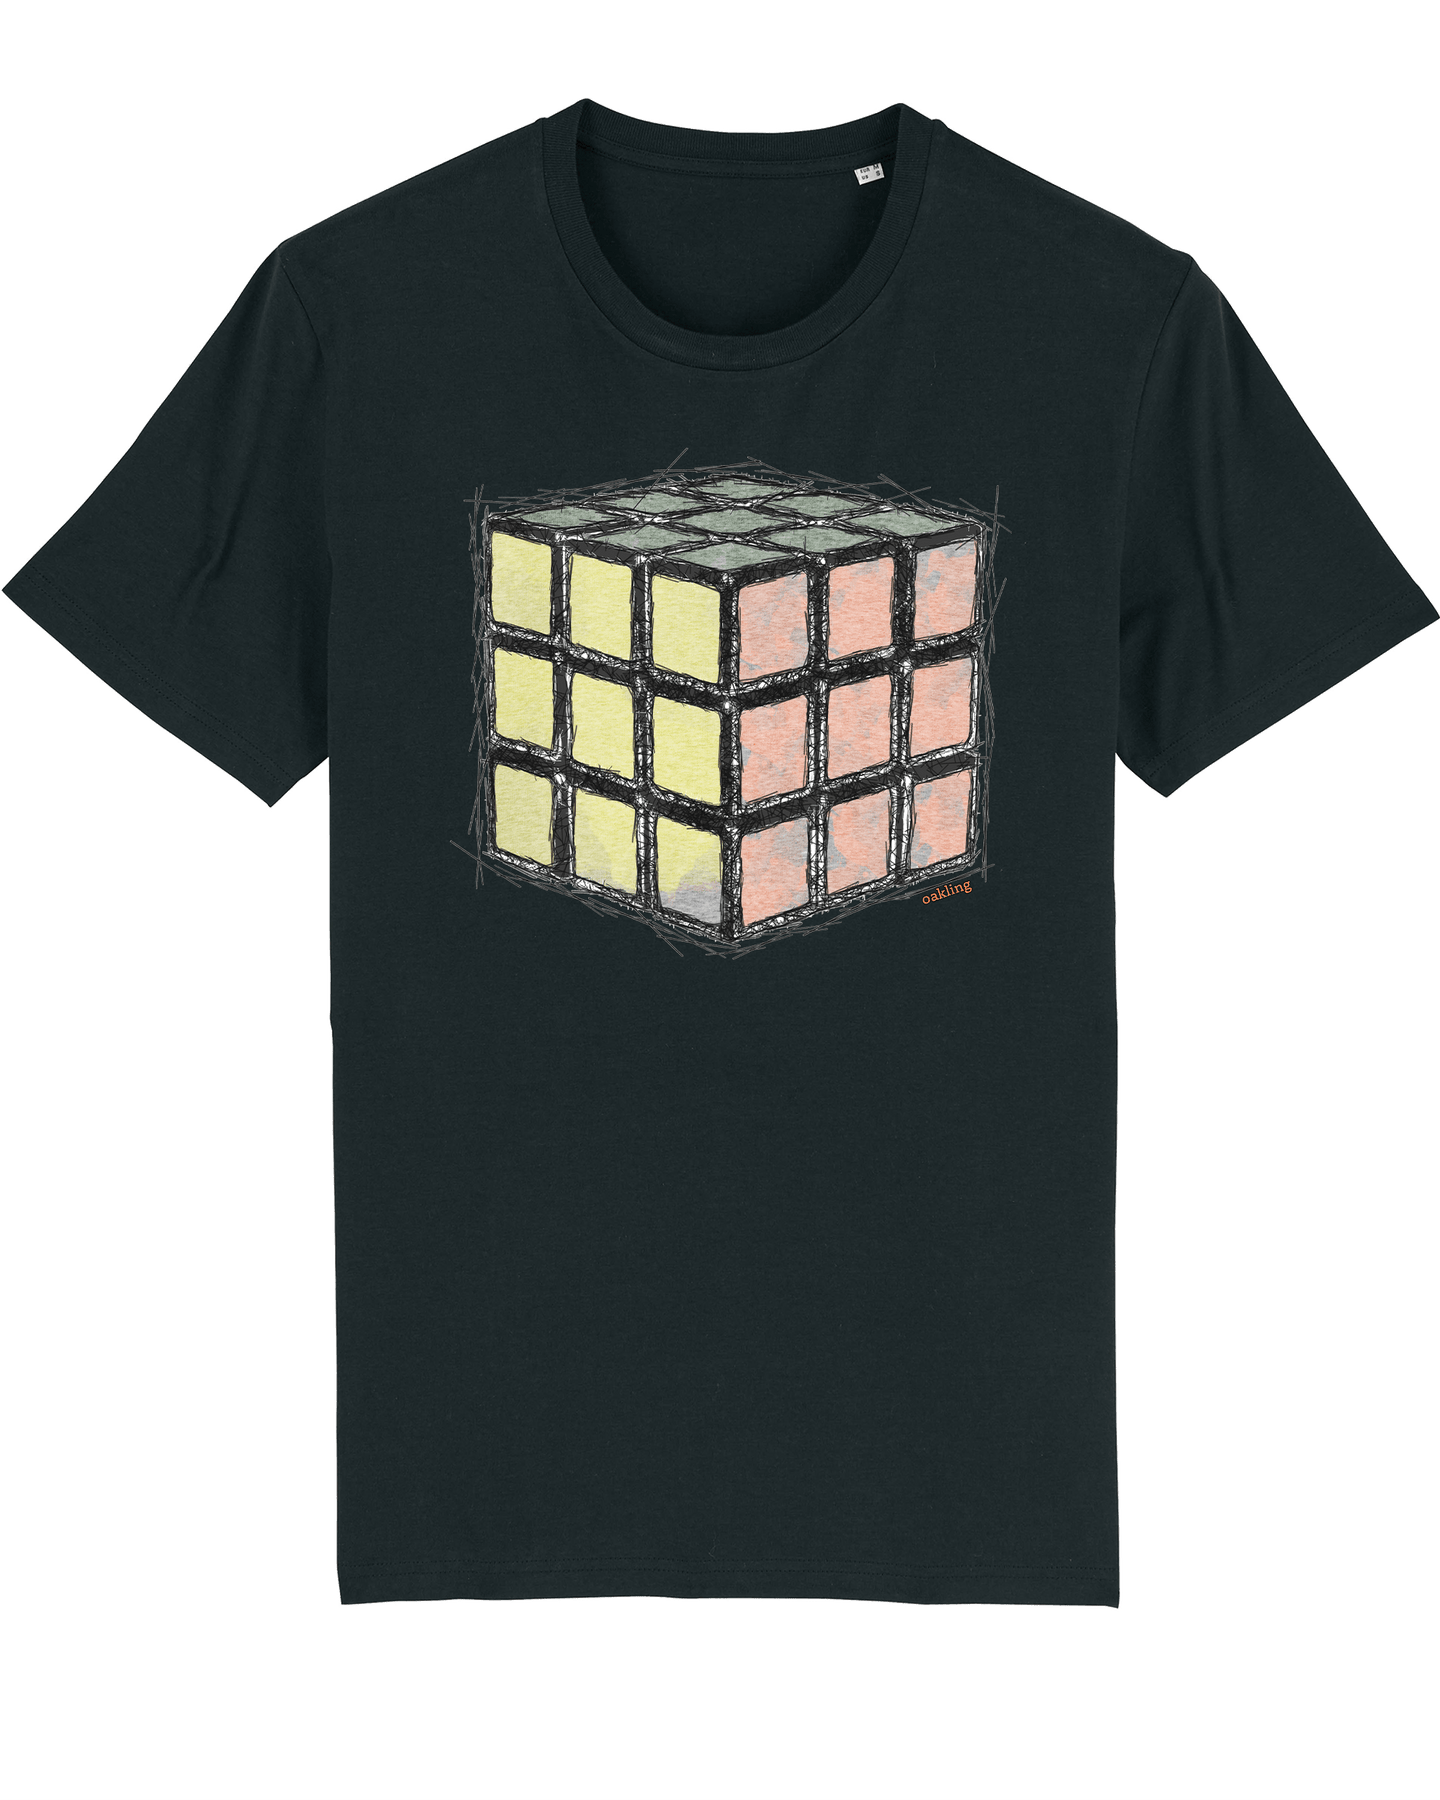 Organic Shirt - The Rubic Black